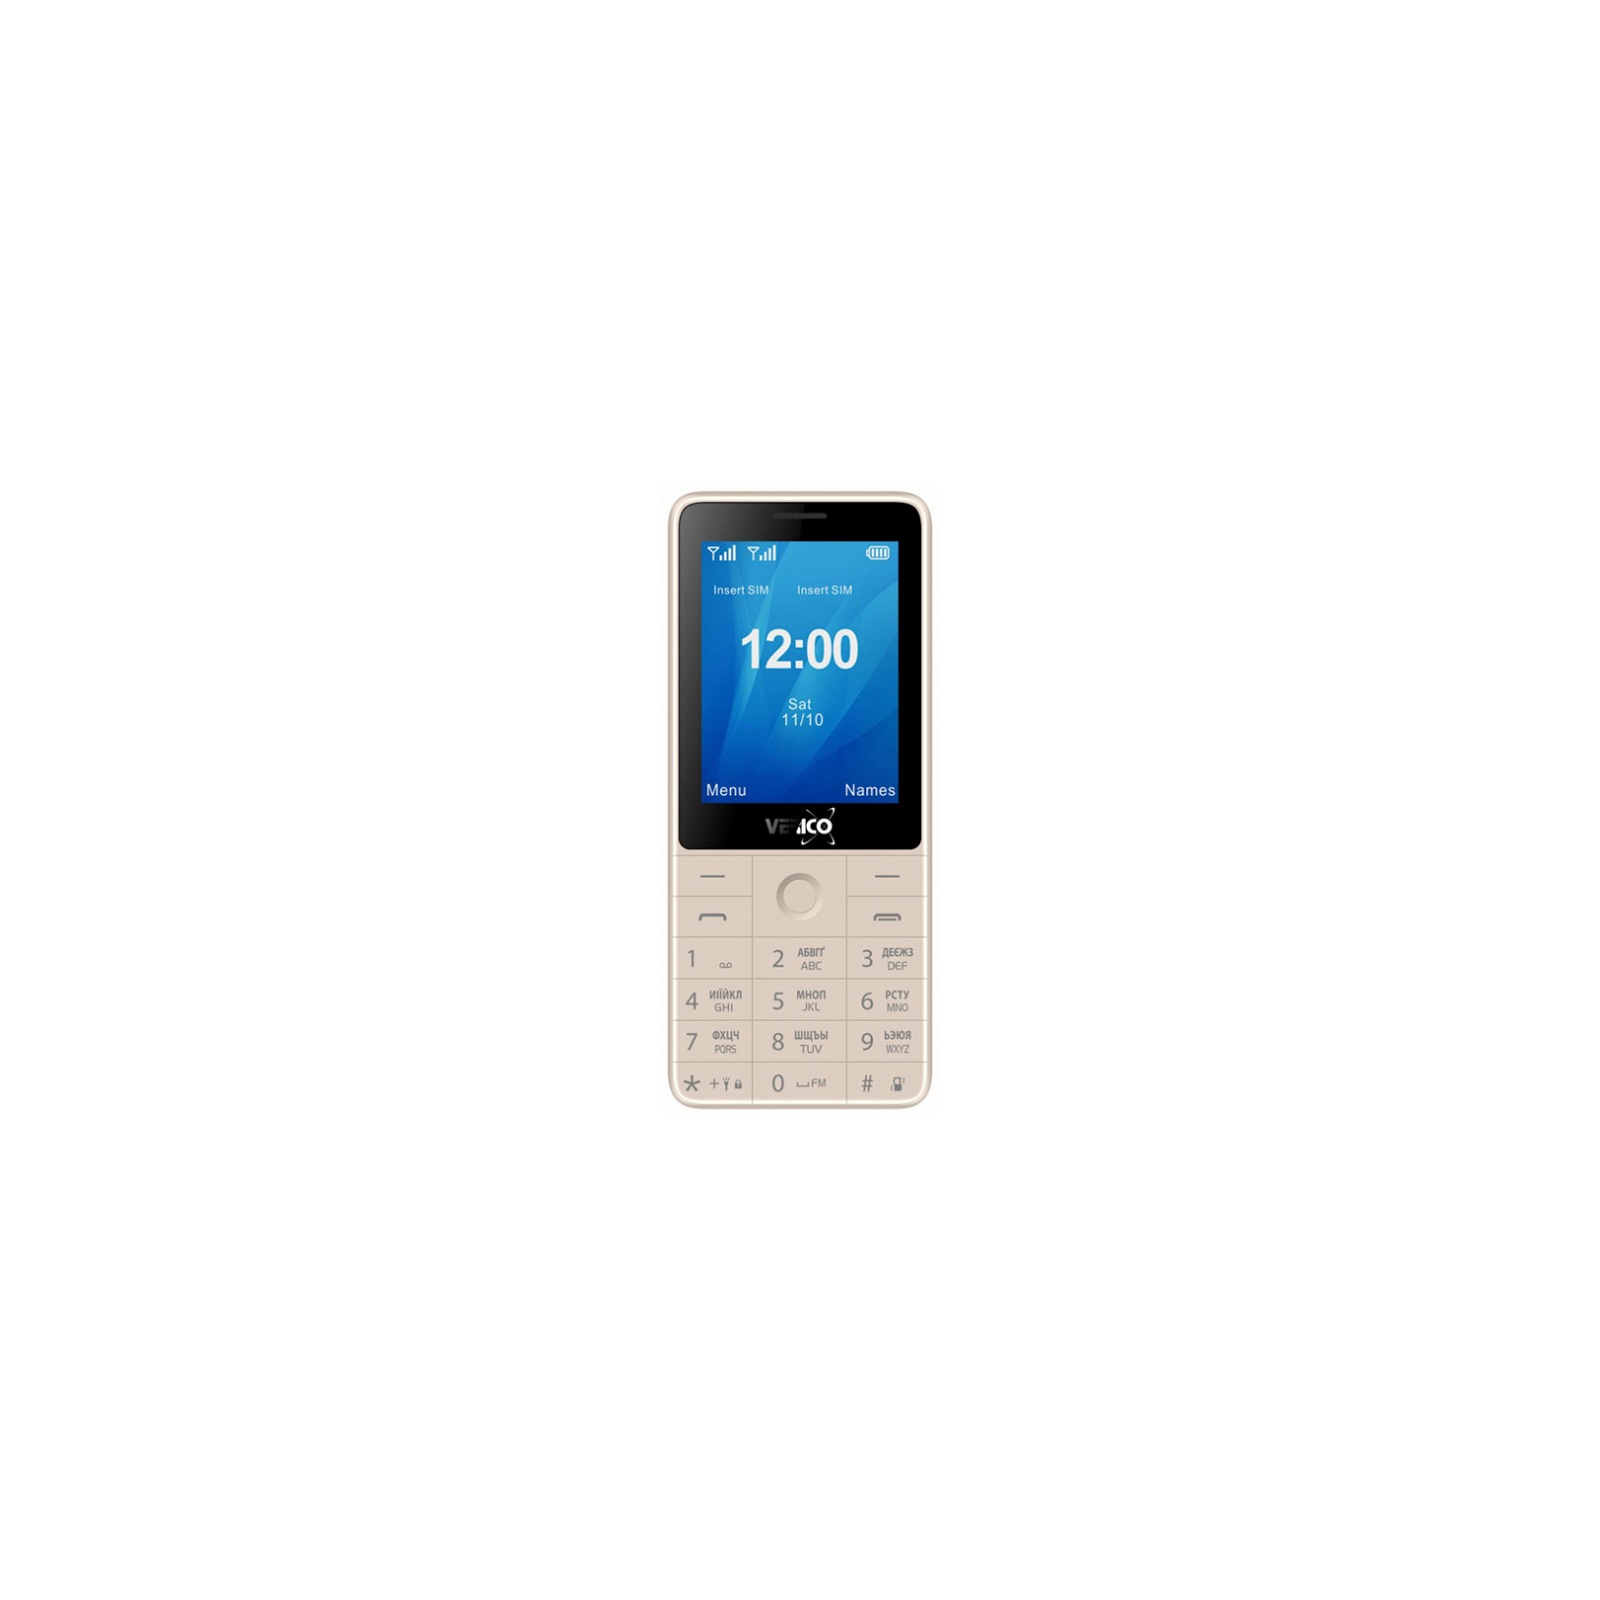 Мобільний телефон Verico Qin S282 Red (4713095606779)